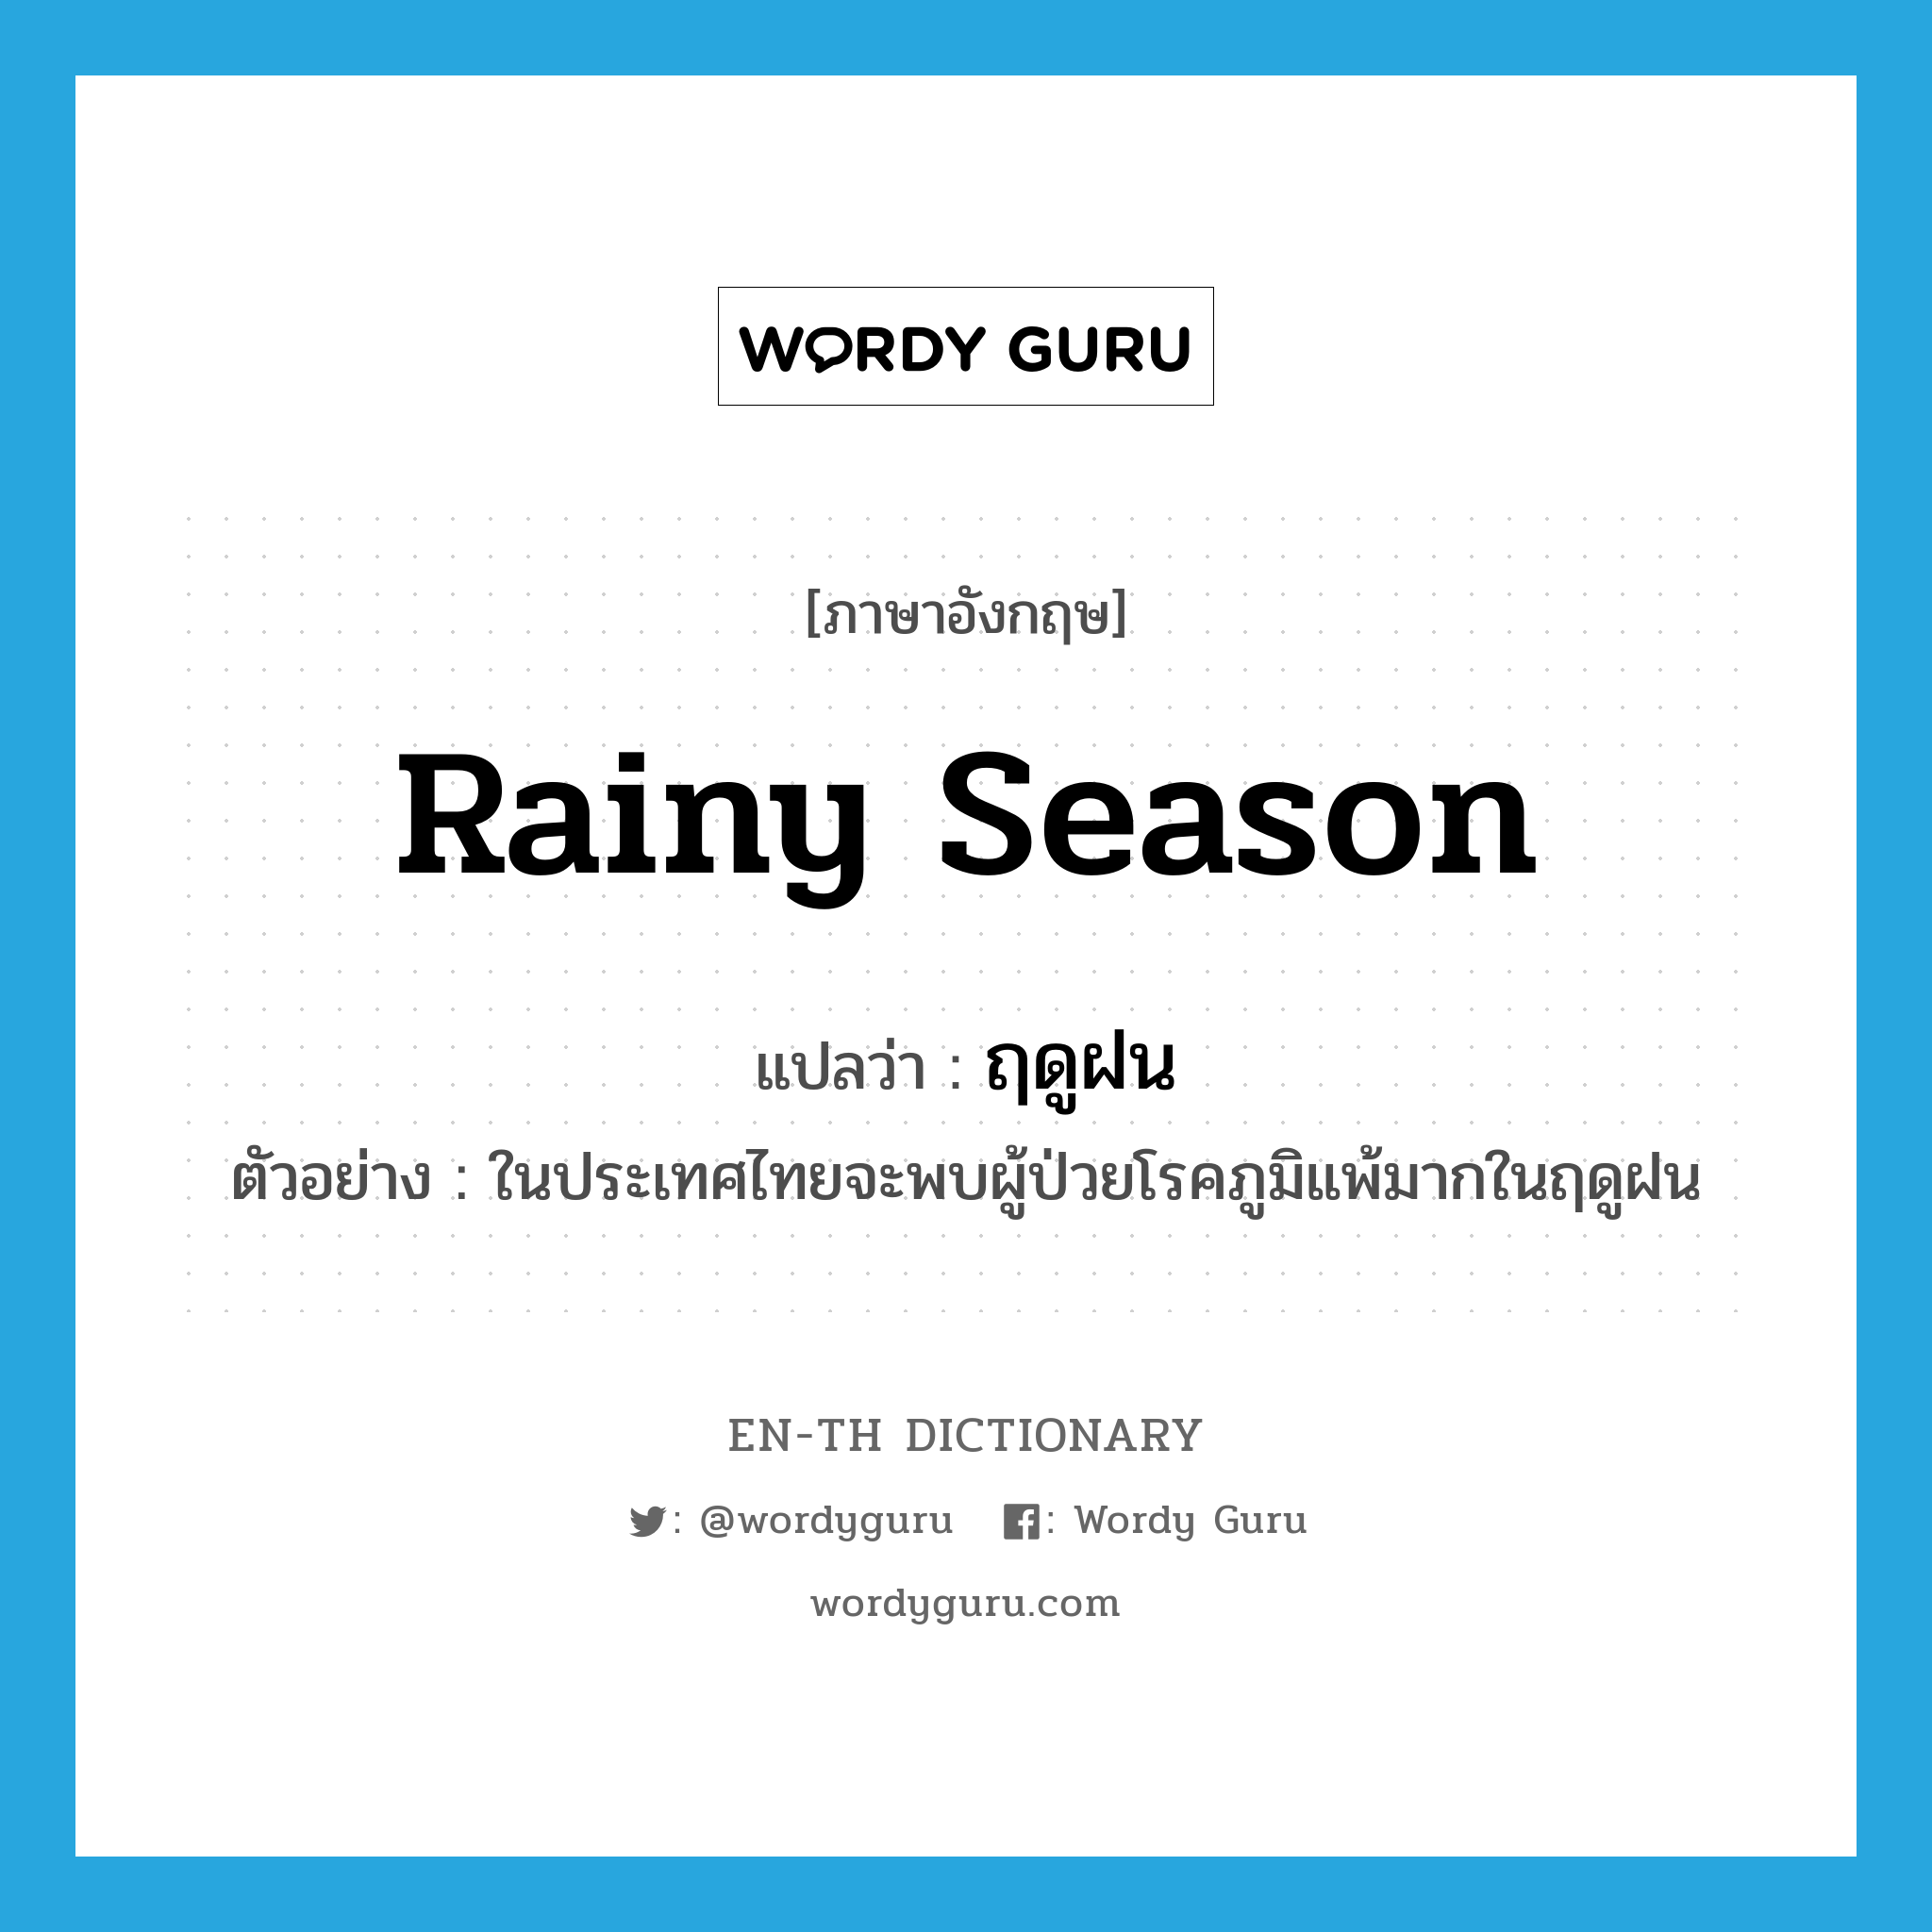 rainy season แปลว่า?, คำศัพท์ภาษาอังกฤษ rainy season แปลว่า ฤดูฝน ประเภท N ตัวอย่าง ในประเทศไทยจะพบผู้ป่วยโรคภูมิแพ้มากในฤดูฝน หมวด N